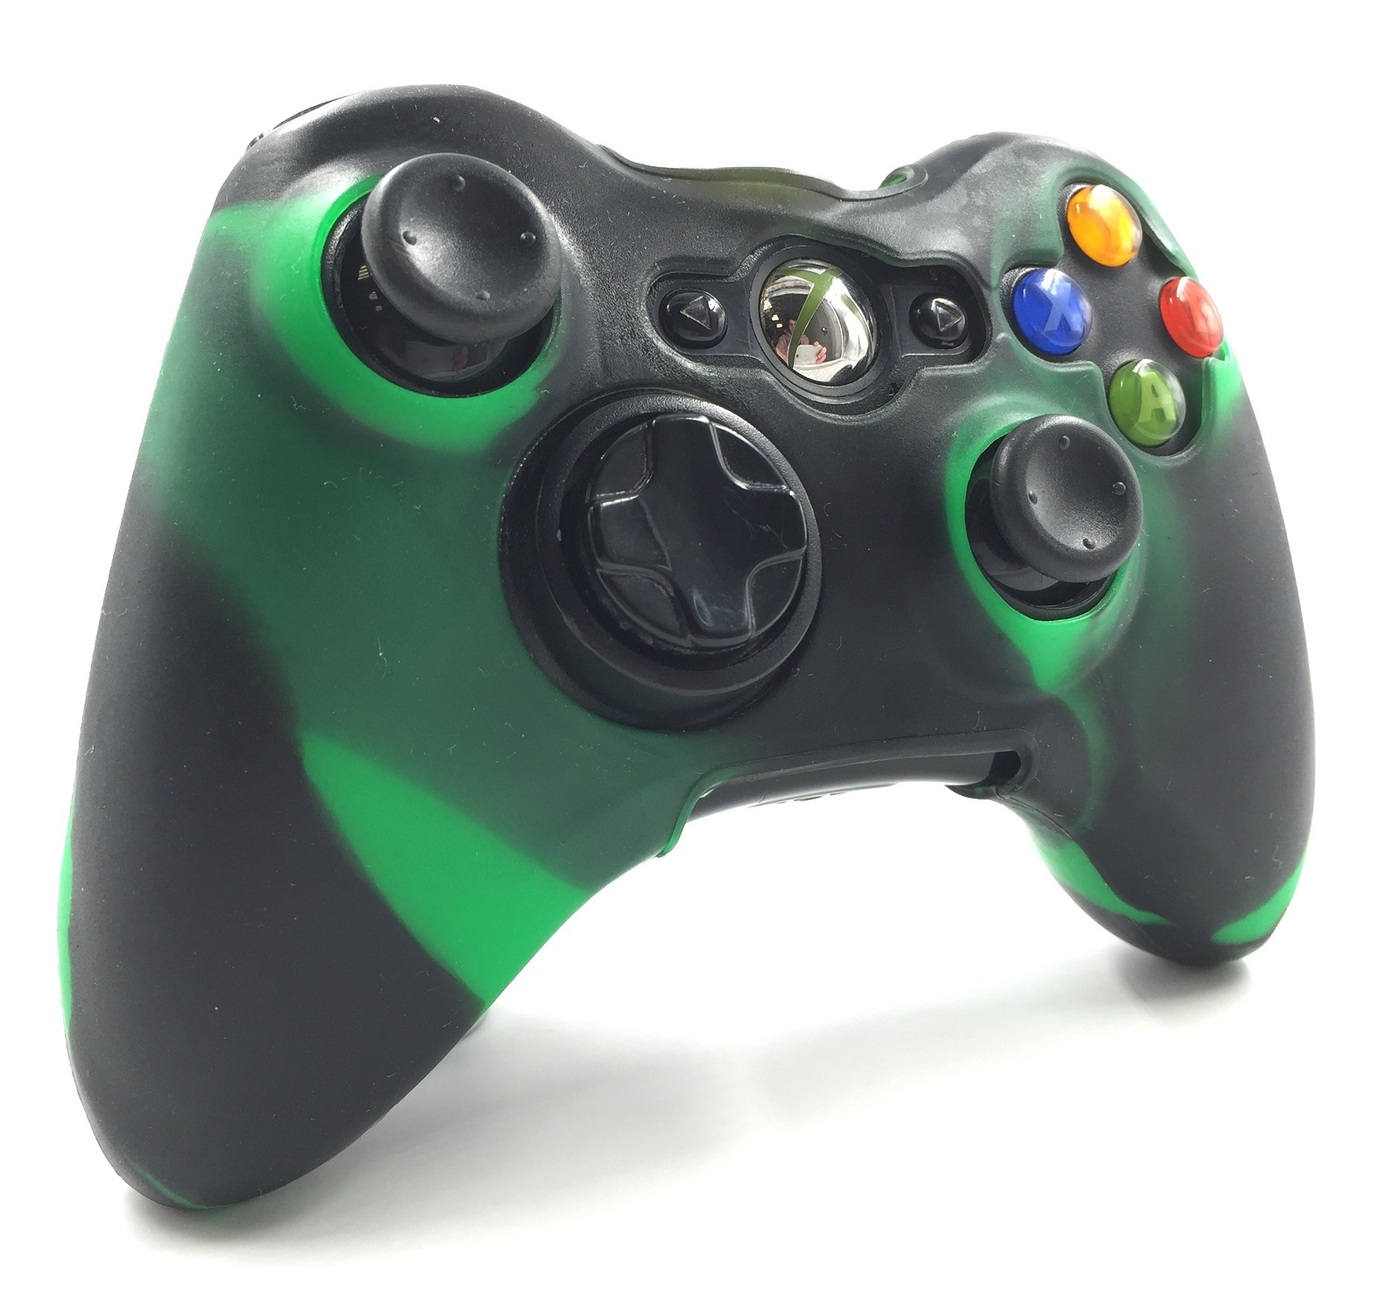 чехол на геймпад xbox 360 чернозеленый blackgreenполное силиконовое покрытие  защита от ударов